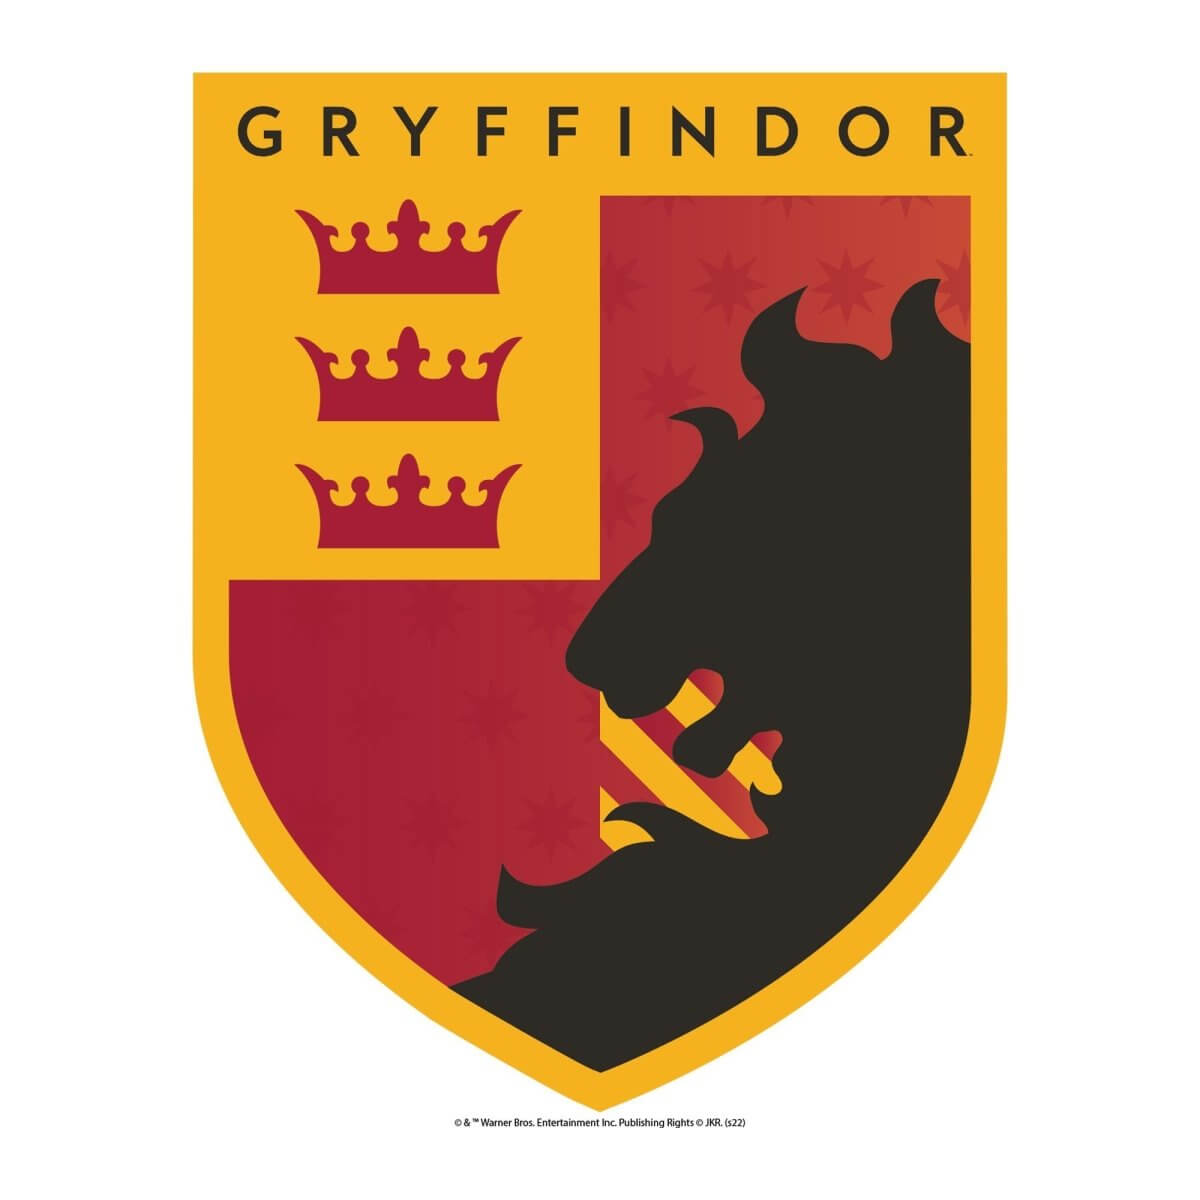 Wall Sticker Harry Potter Gryffindor Emblem